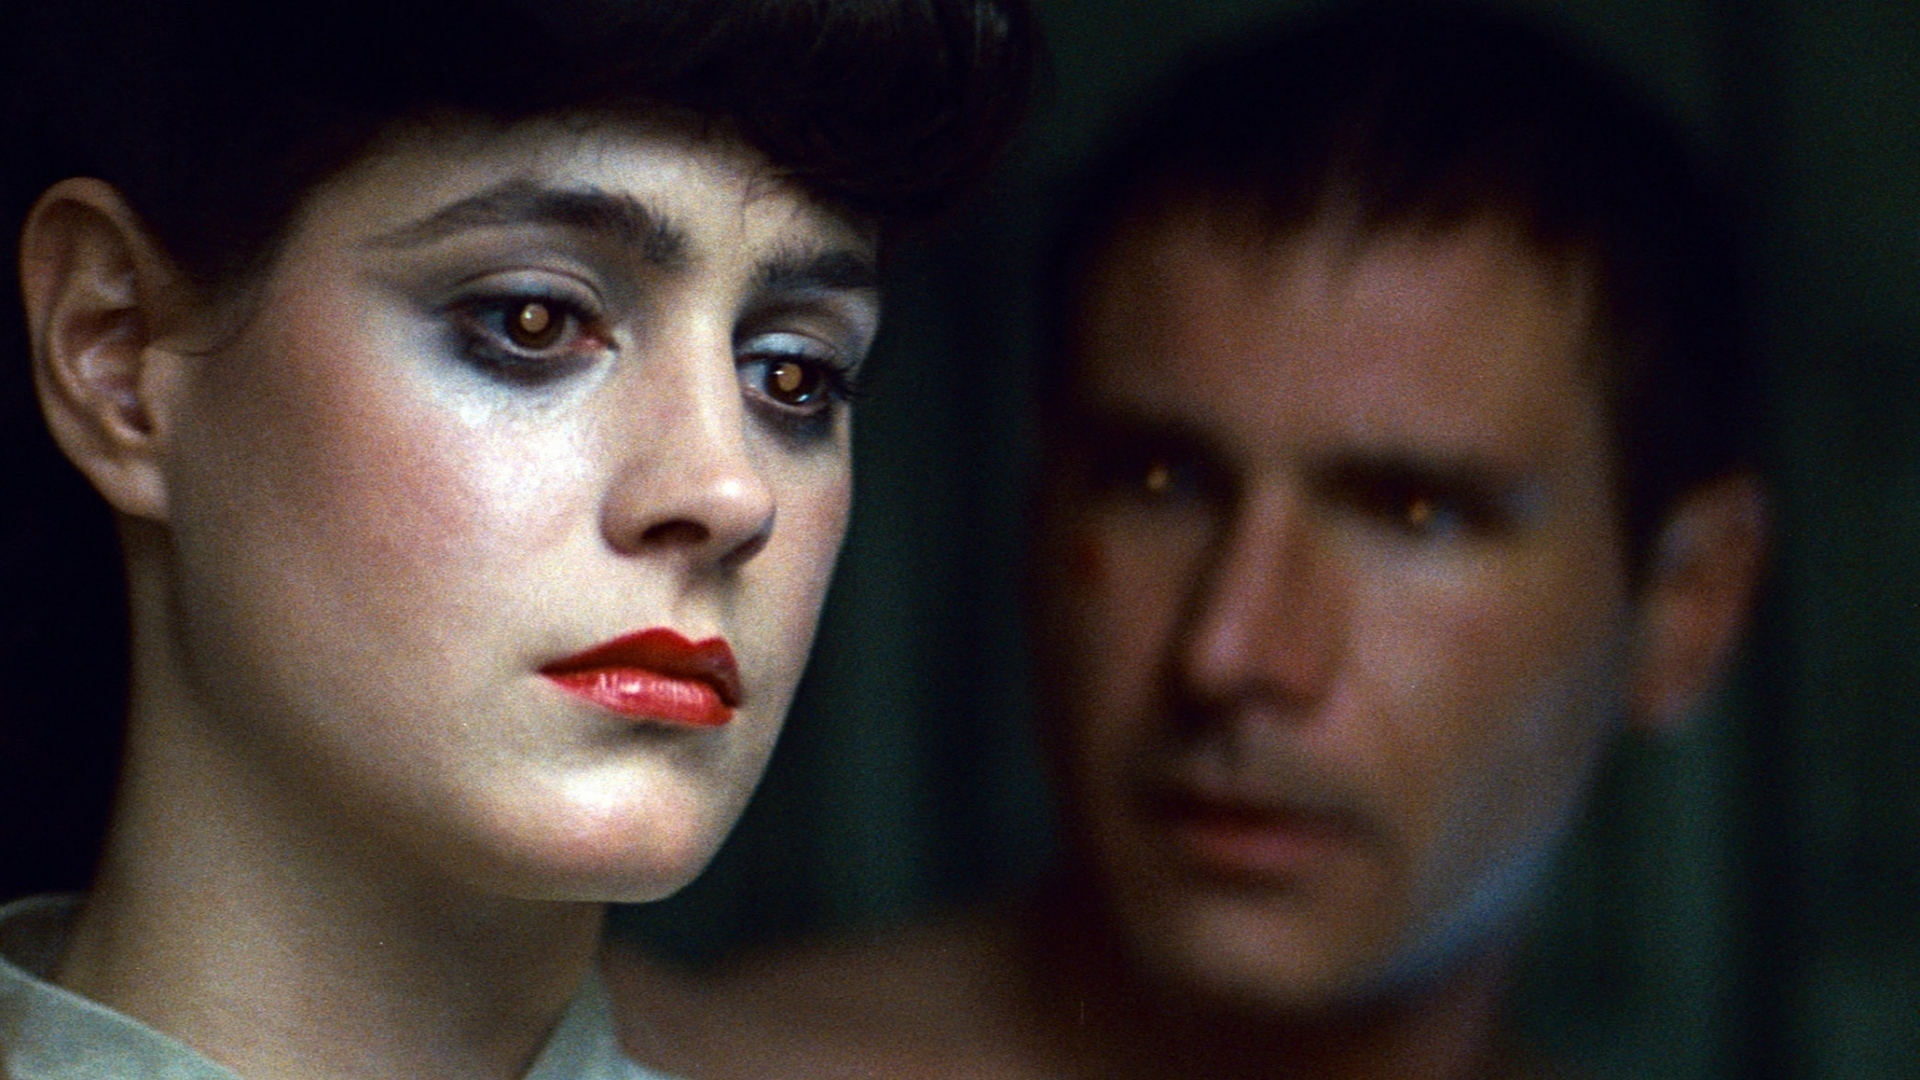 Blade Runner፡ የተሻሻለ እትም ድምቀቶች የዘመኑ ሲኒማቲክስ በአዲስ የፊልም ማስታወቂያ